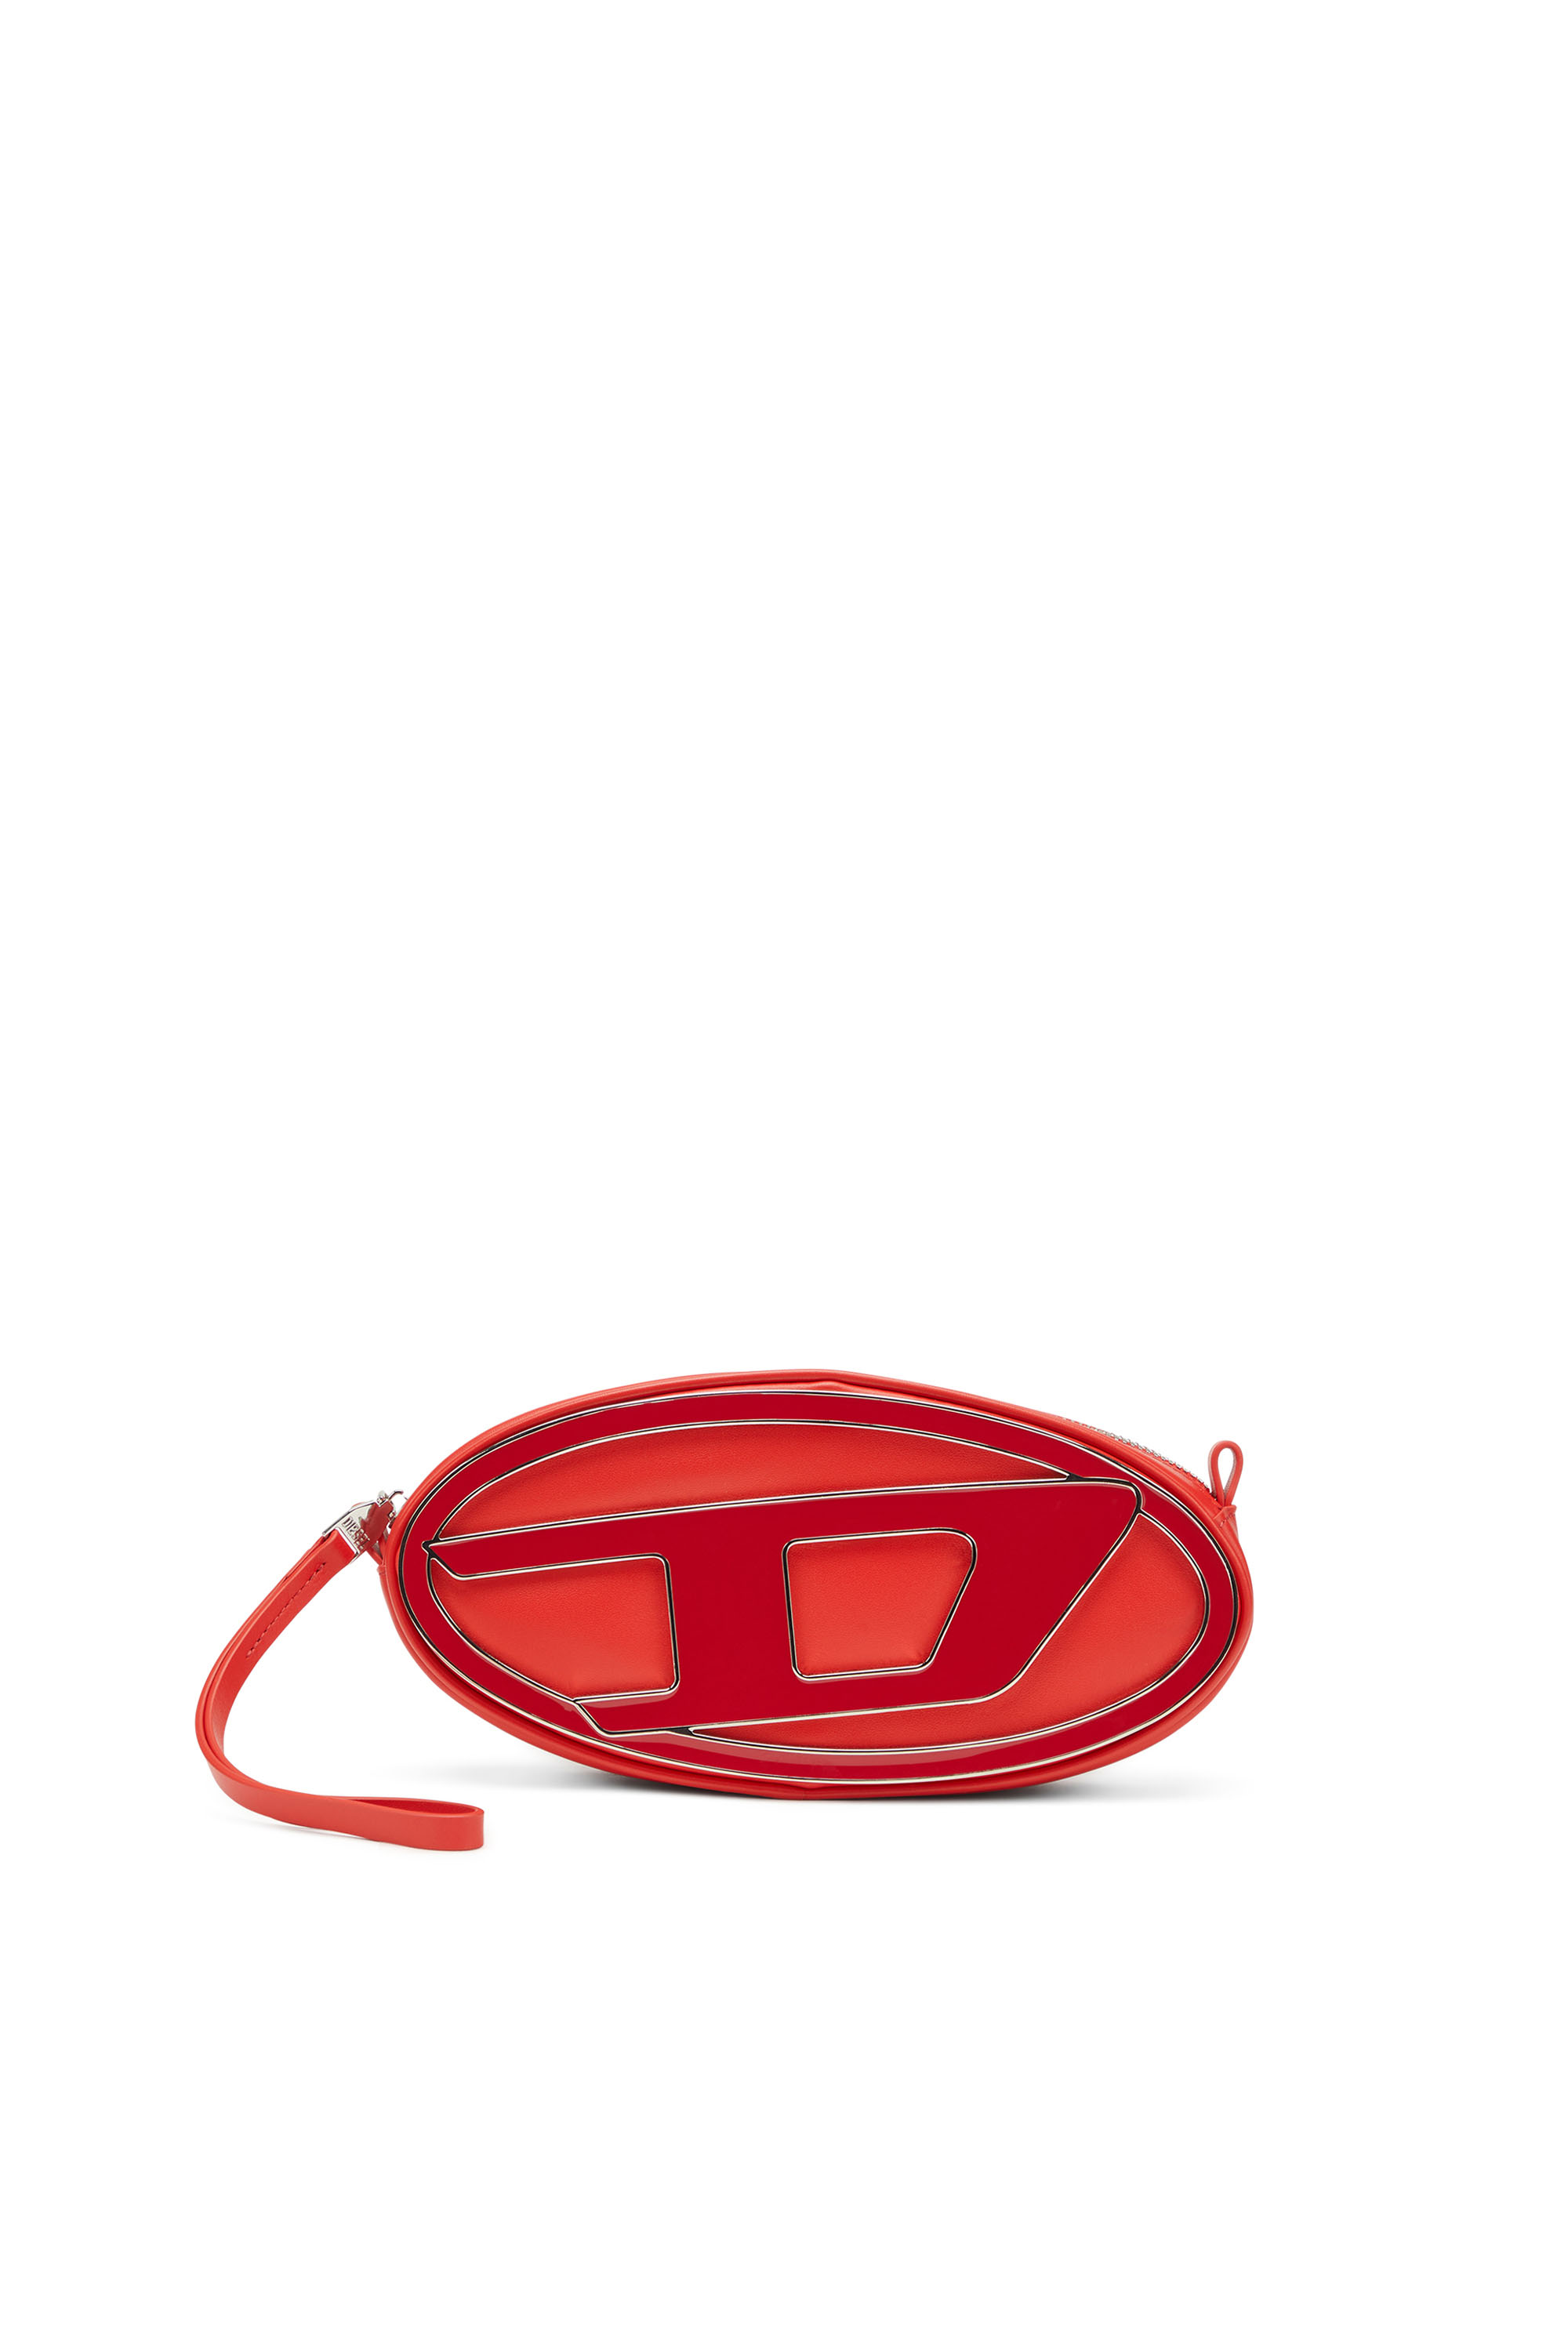 Diesel - 1DR-Pouch - Bandolera pequeña de cuero con placa con logotipo - Bolso cruzados - Mujer - Rojo